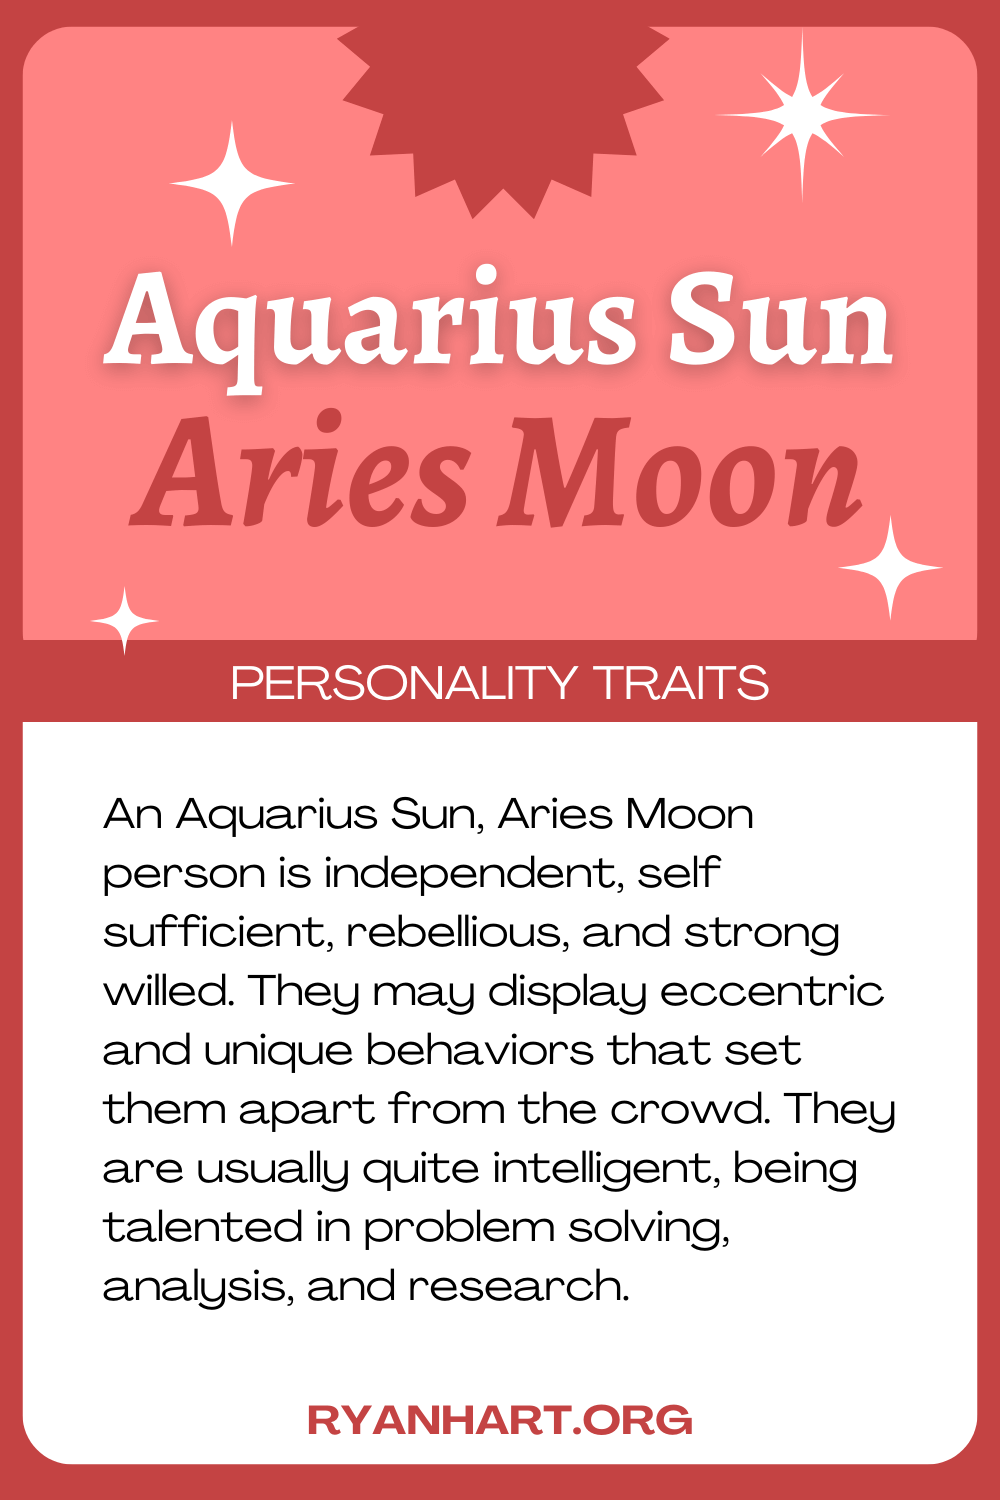 Aquarius Sun Aries Moon Description